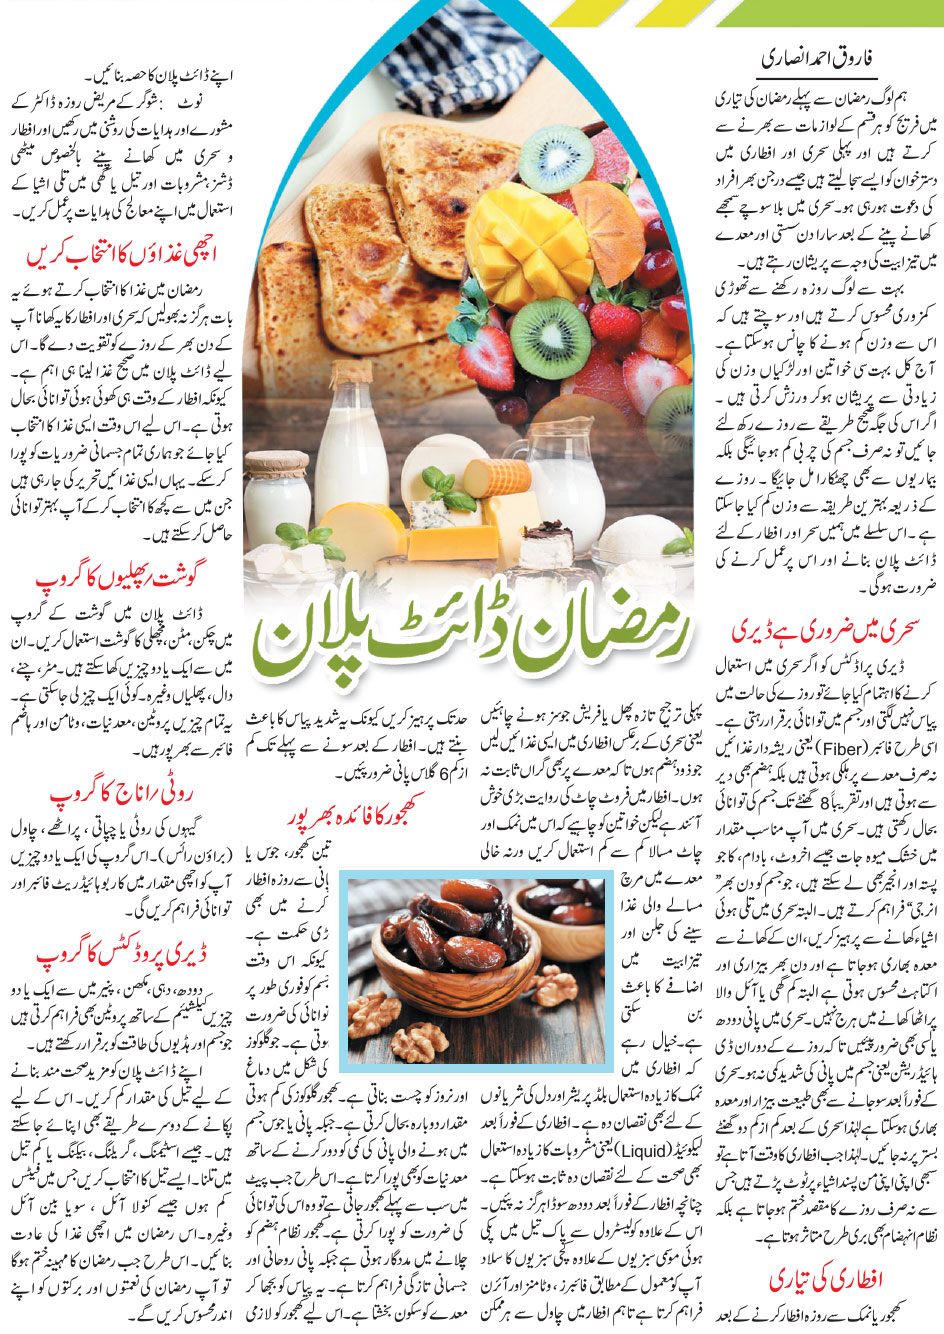 Ramadan Diet Plan For Weight Loss in Urdu